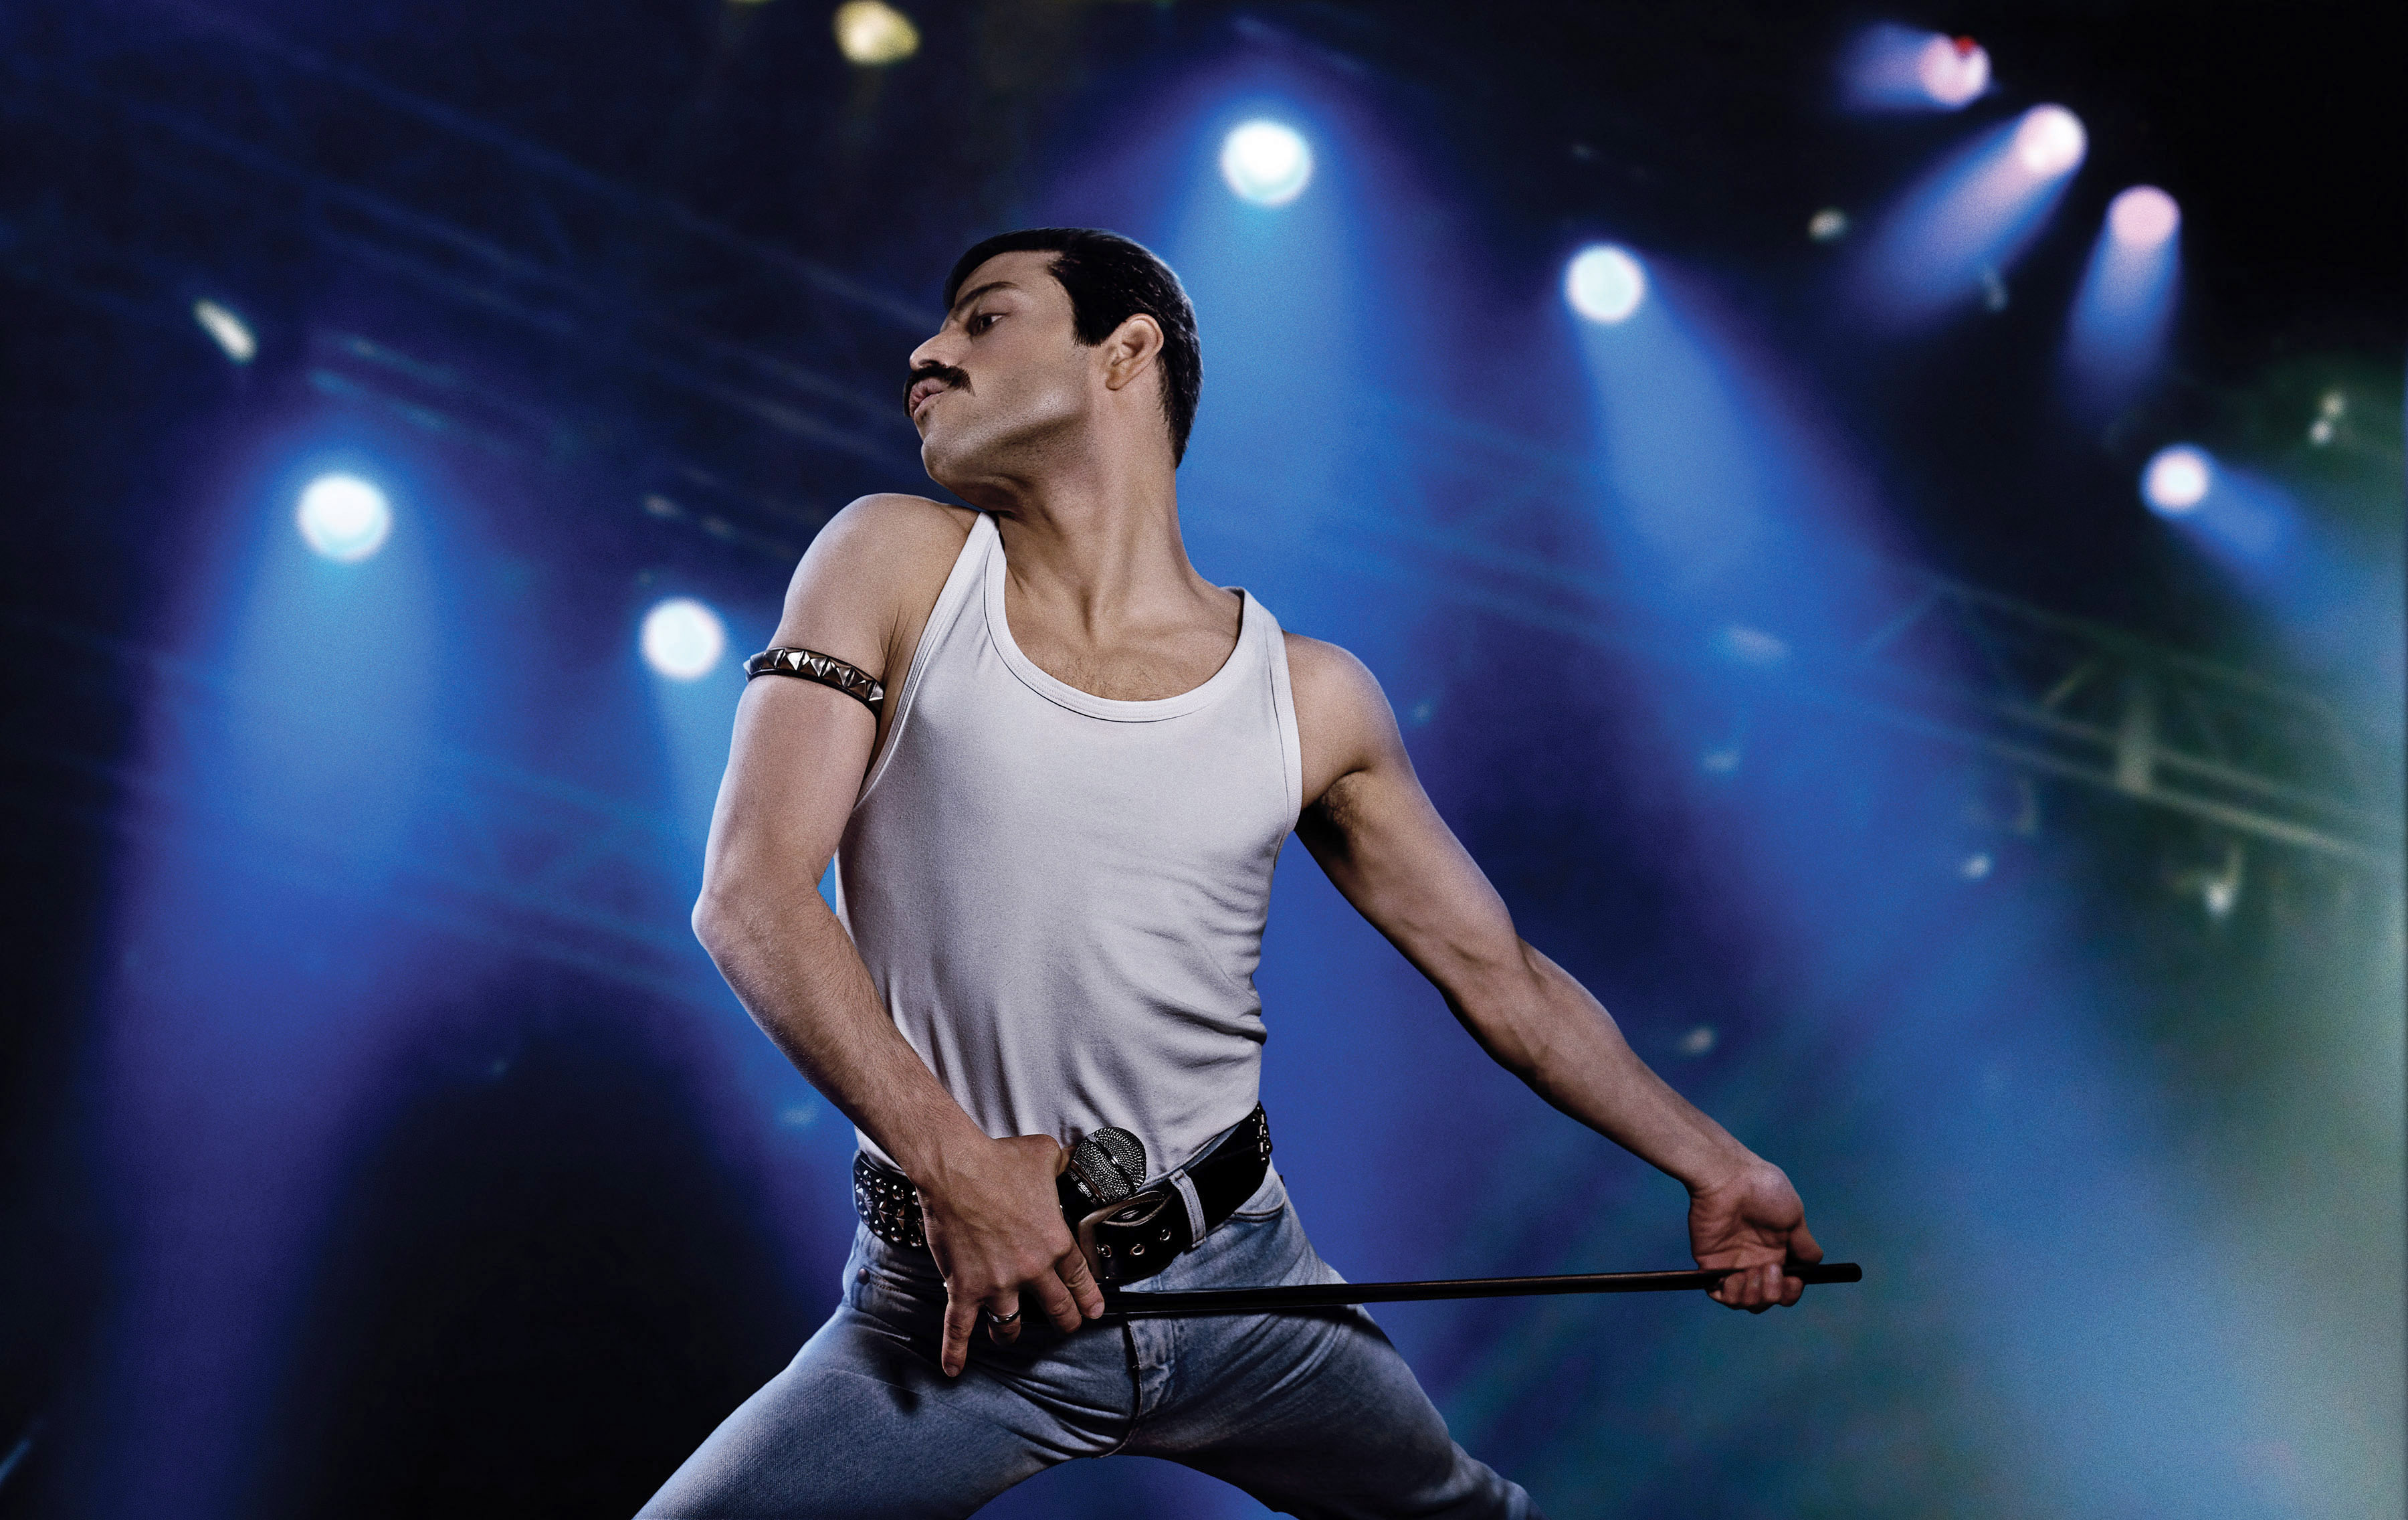 Rami Malek on stage as Freddie Mercury.